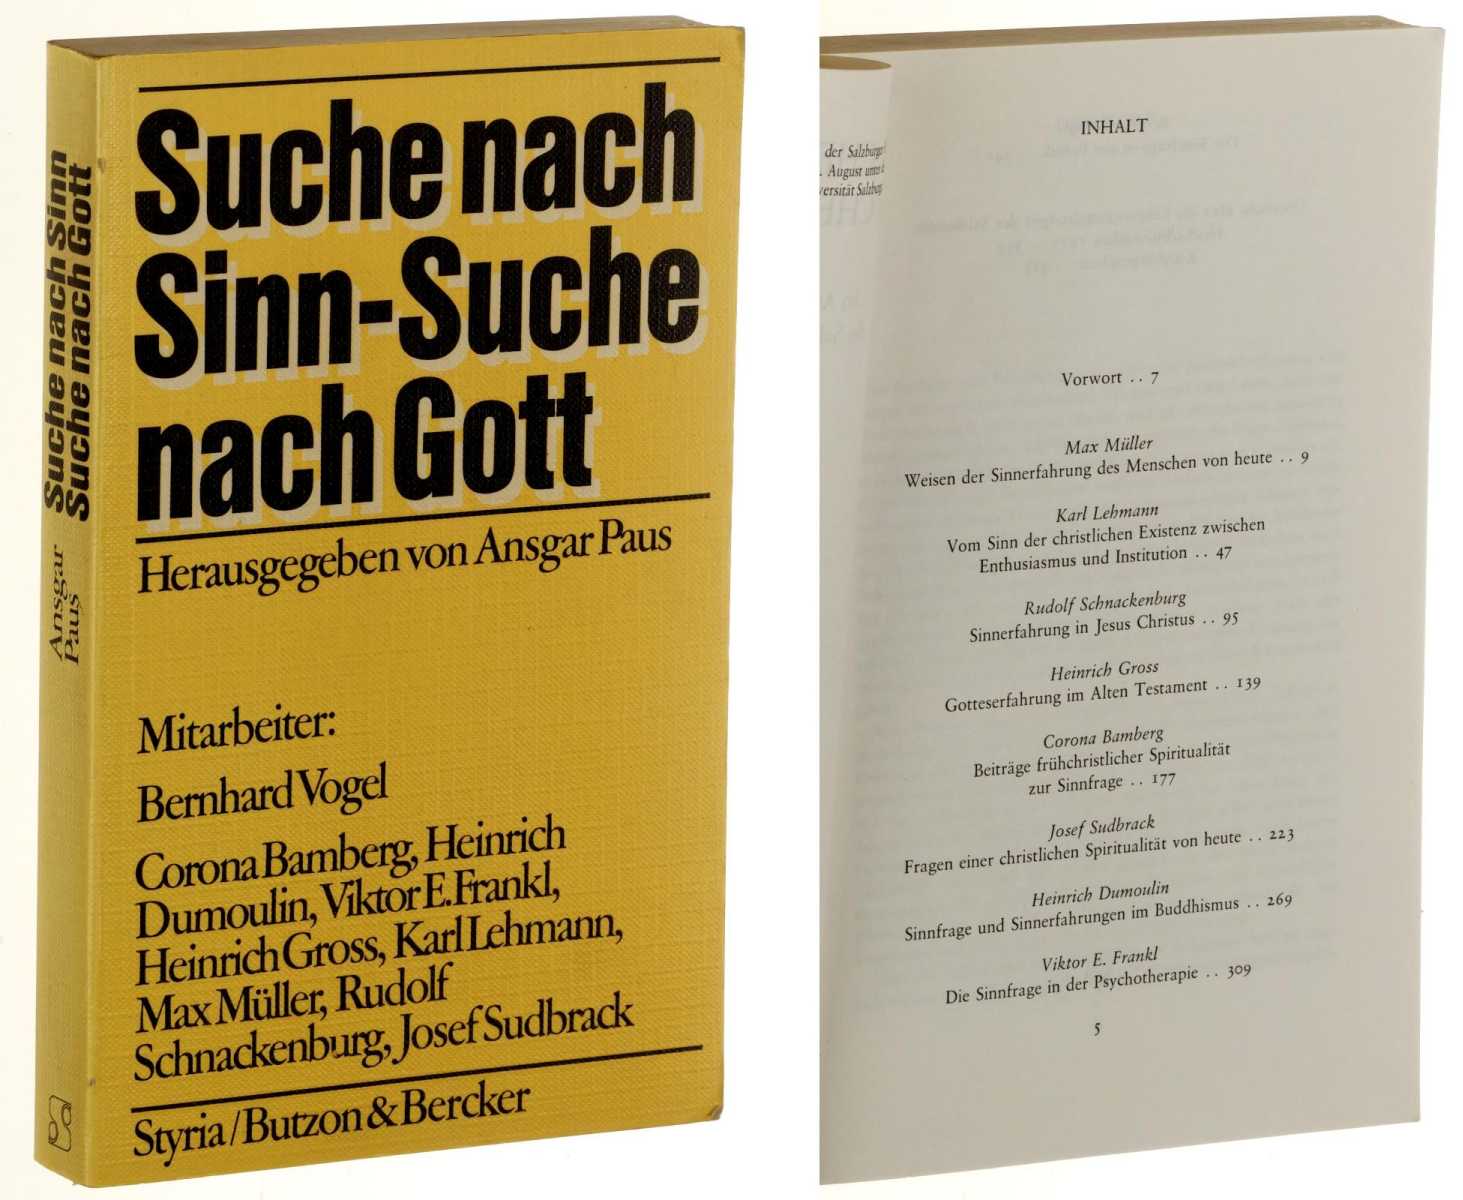   Suche nach Sinn - Suche nach Gott. Hrsg. von Ansgar Paus. 